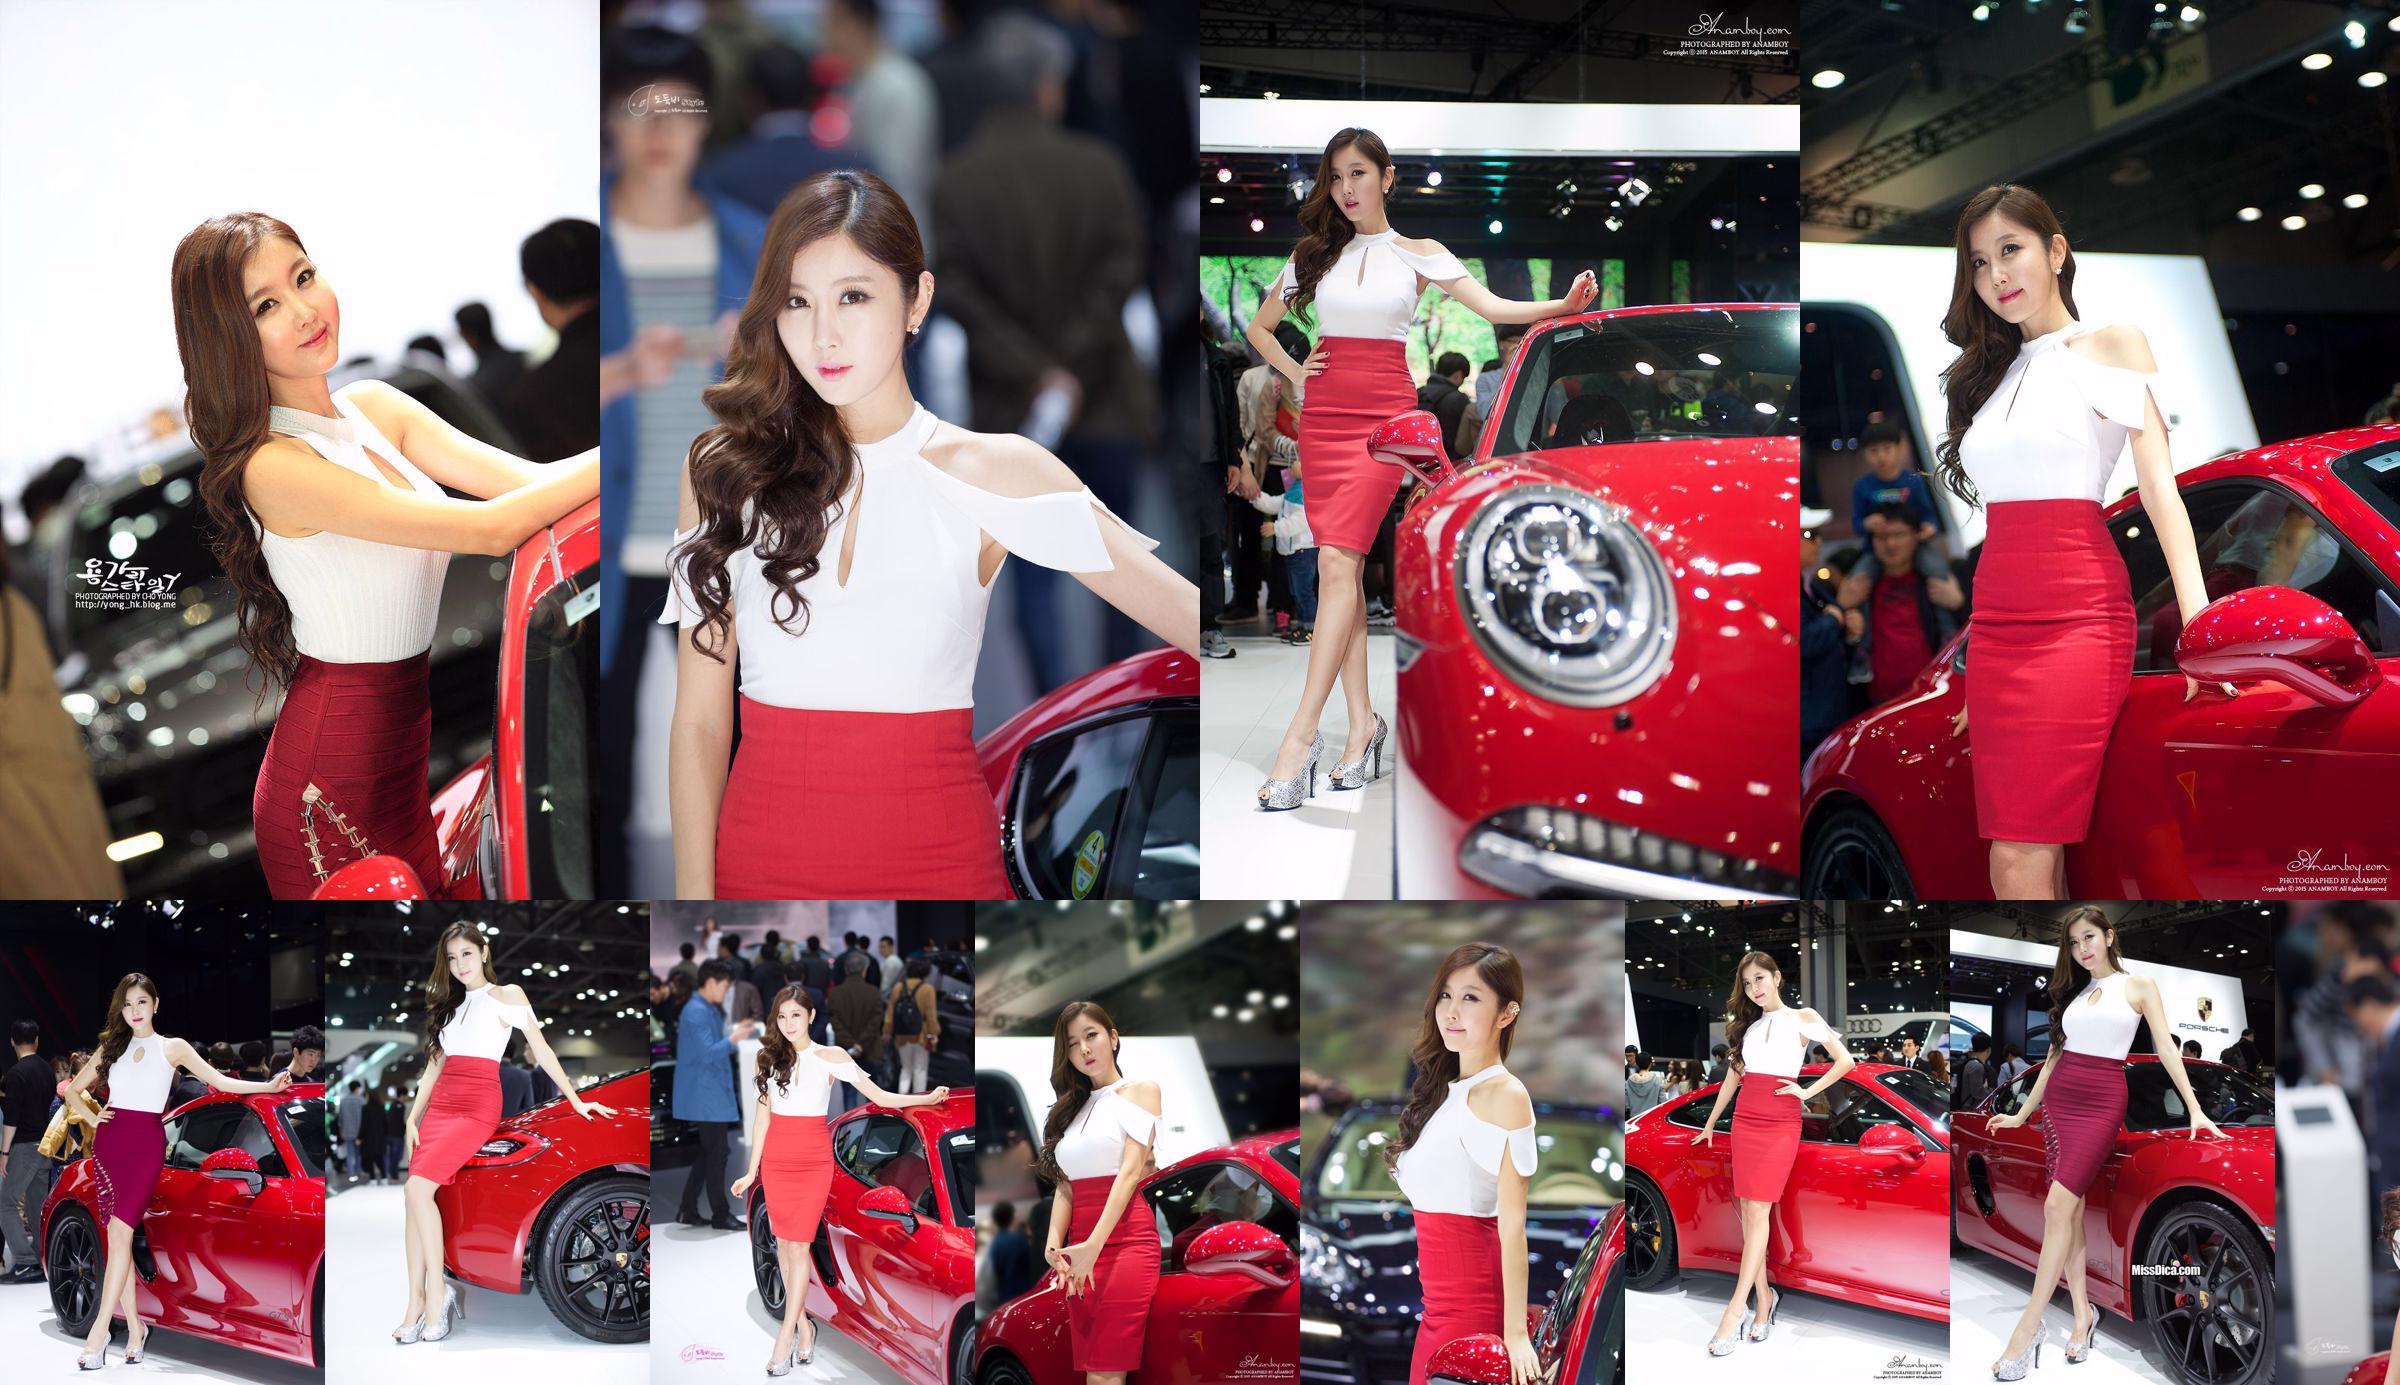 รวมภาพรถเกาหลีรุ่น Cui Xingya / "Red Skirt Series ของ Cui Xinger ที่งานออโต้โชว์" No.fd8391 หน้า 1